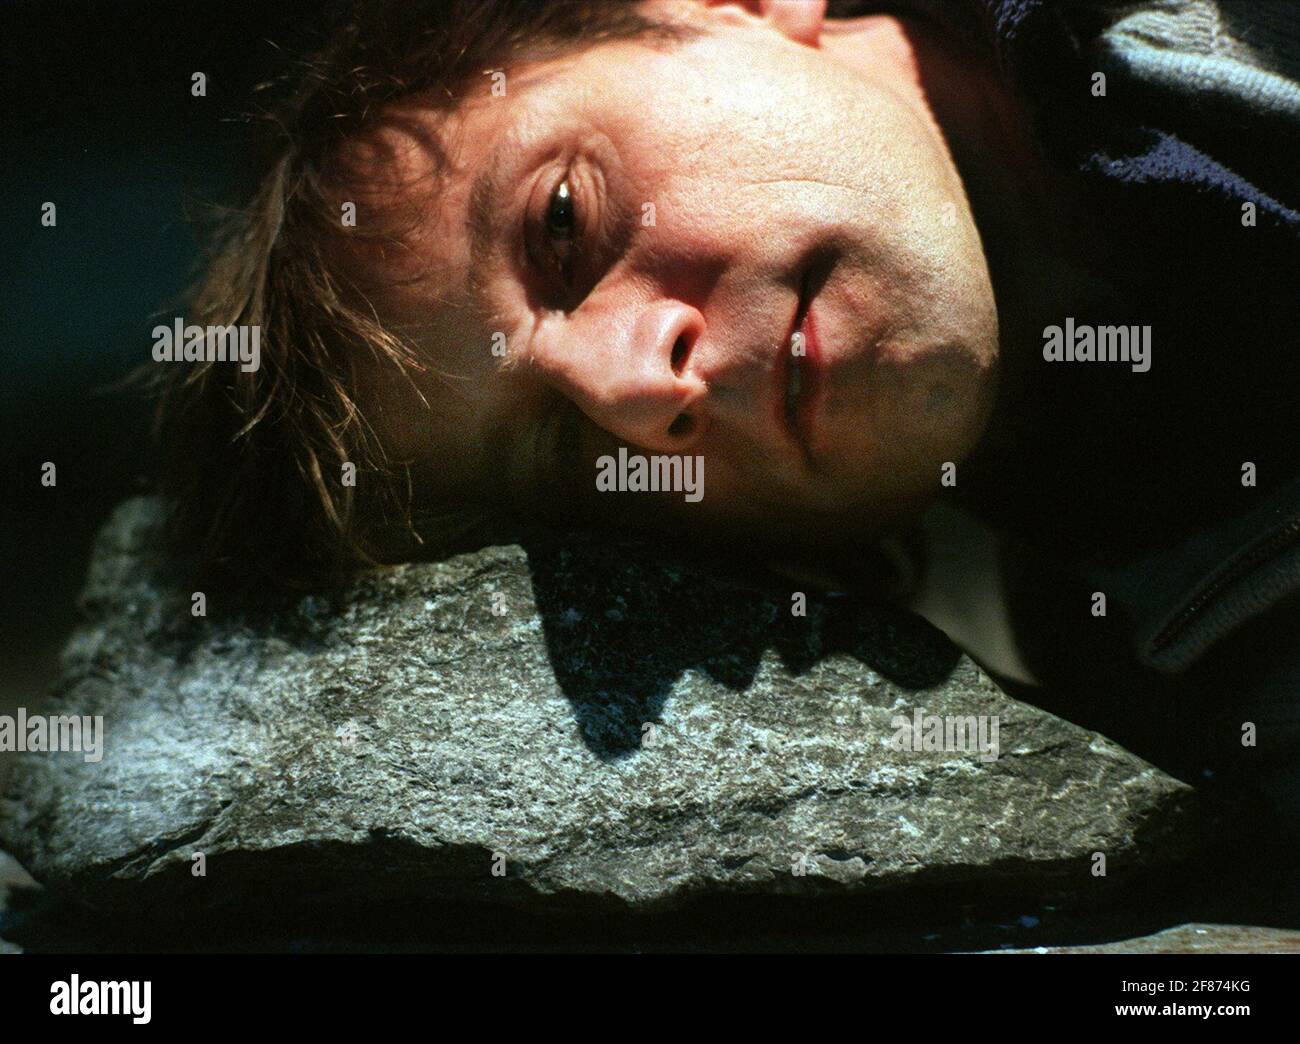 Simon McBurney en el escenario en los Riverside Studios, con su cabeza en una roca, que se utiliza durante las actuaciones, y considera como el tipo de tecnología que le atrae. Foto de stock